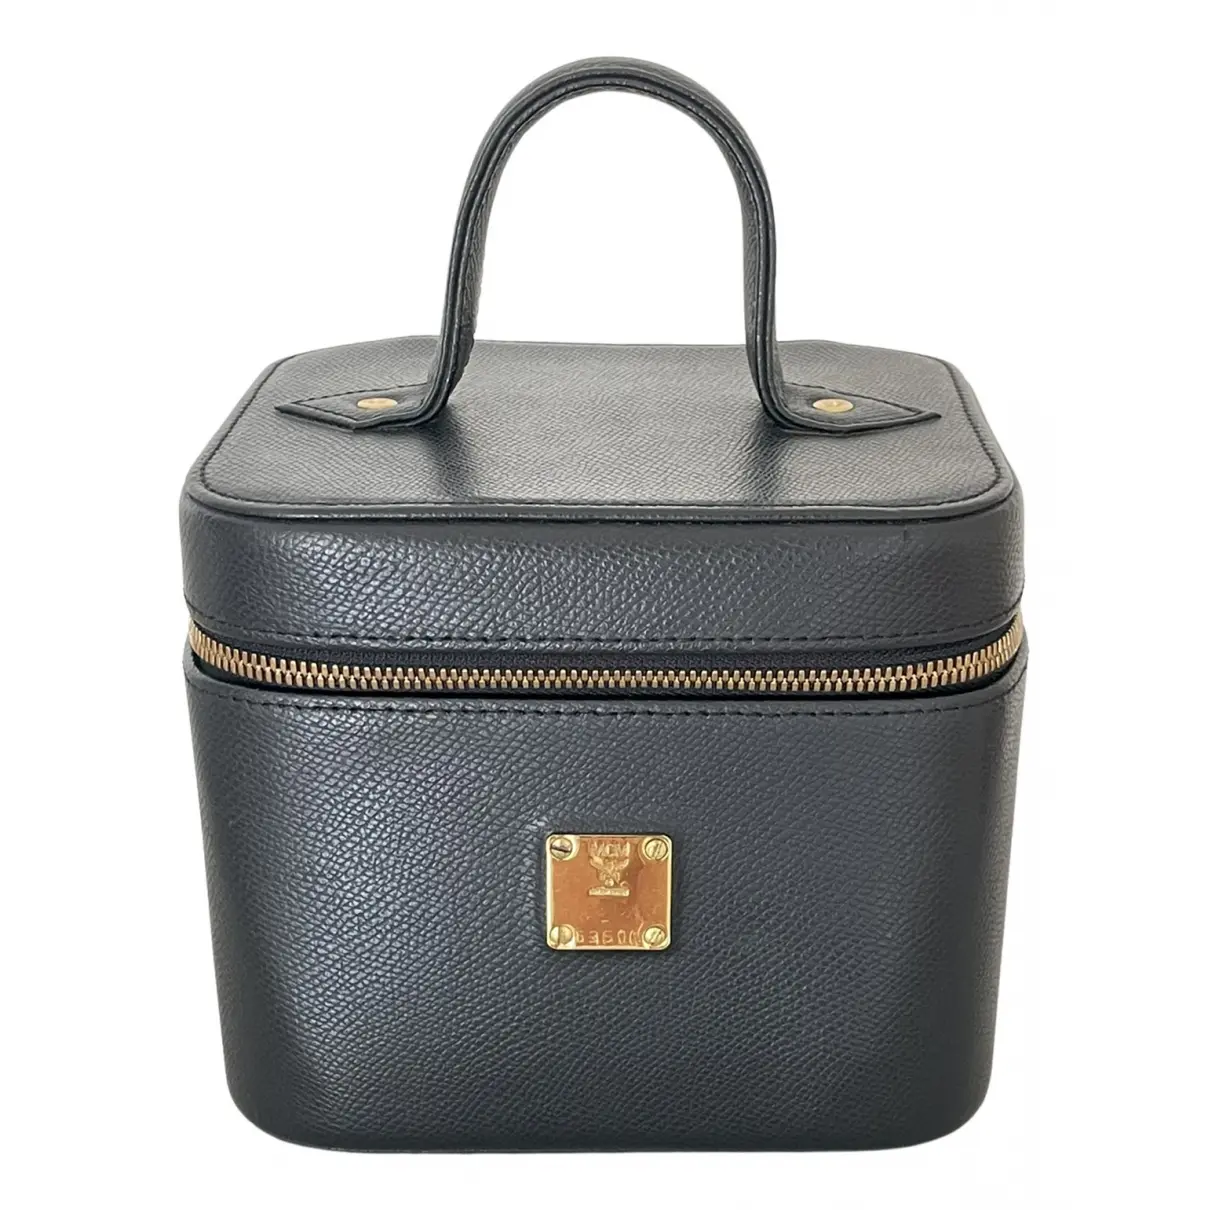 Leather travel bag MCM - Vintage